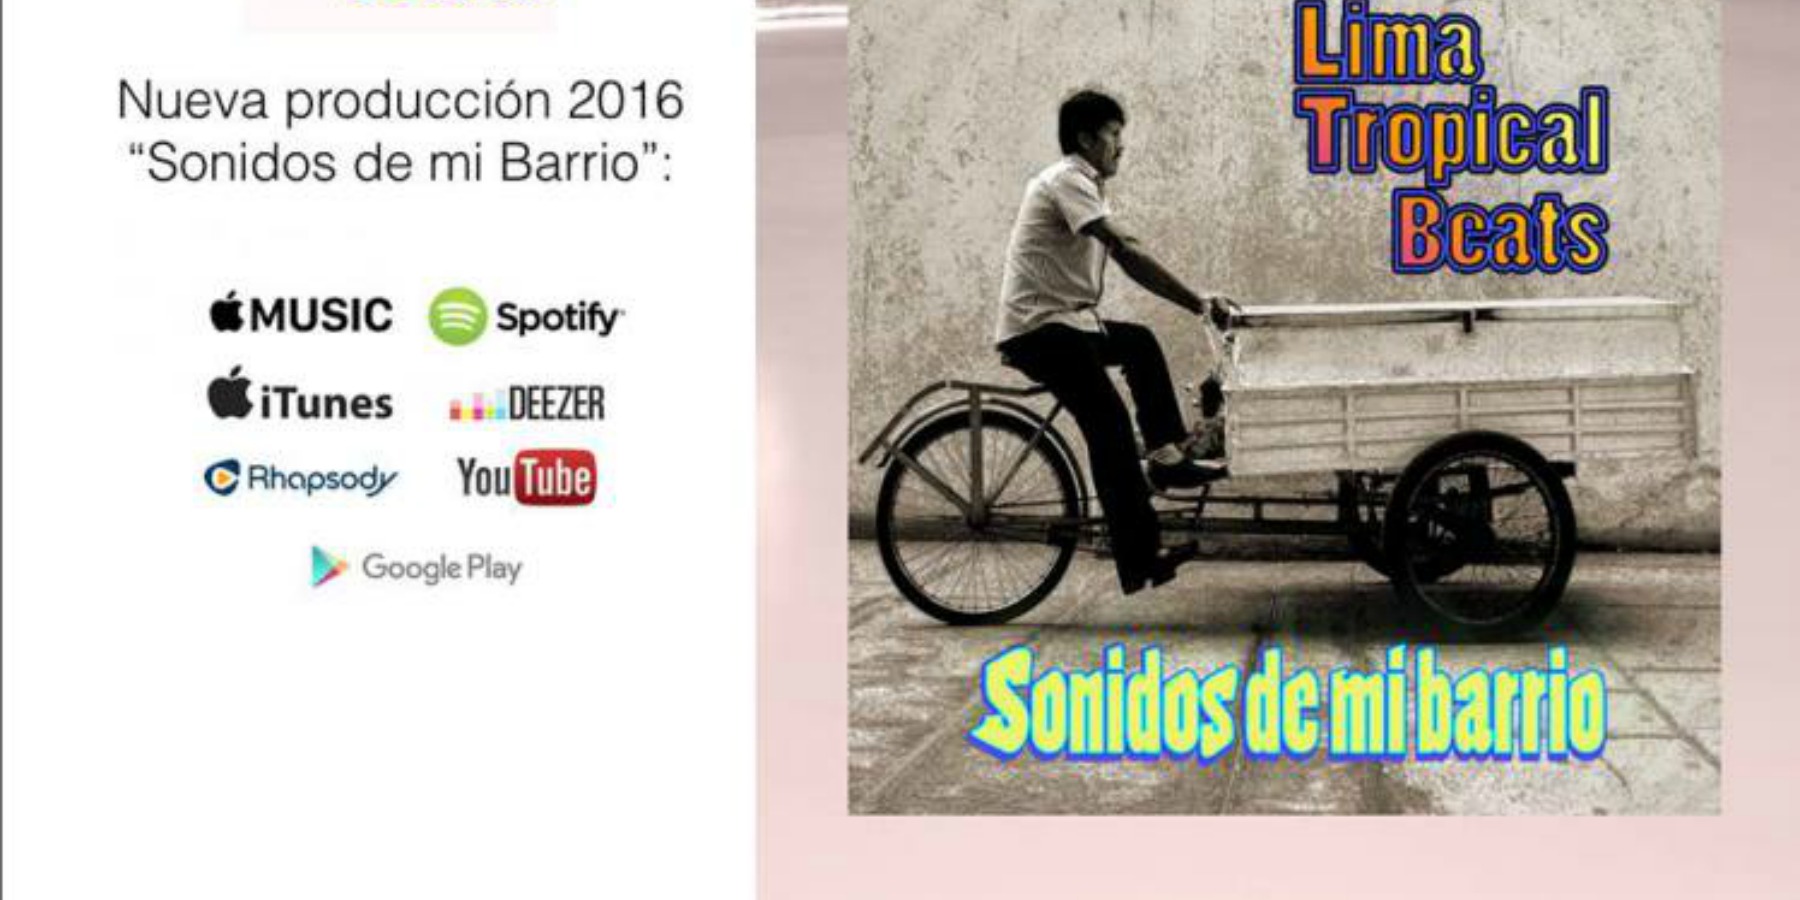 Lima Tropical Beats regresa en el 2016